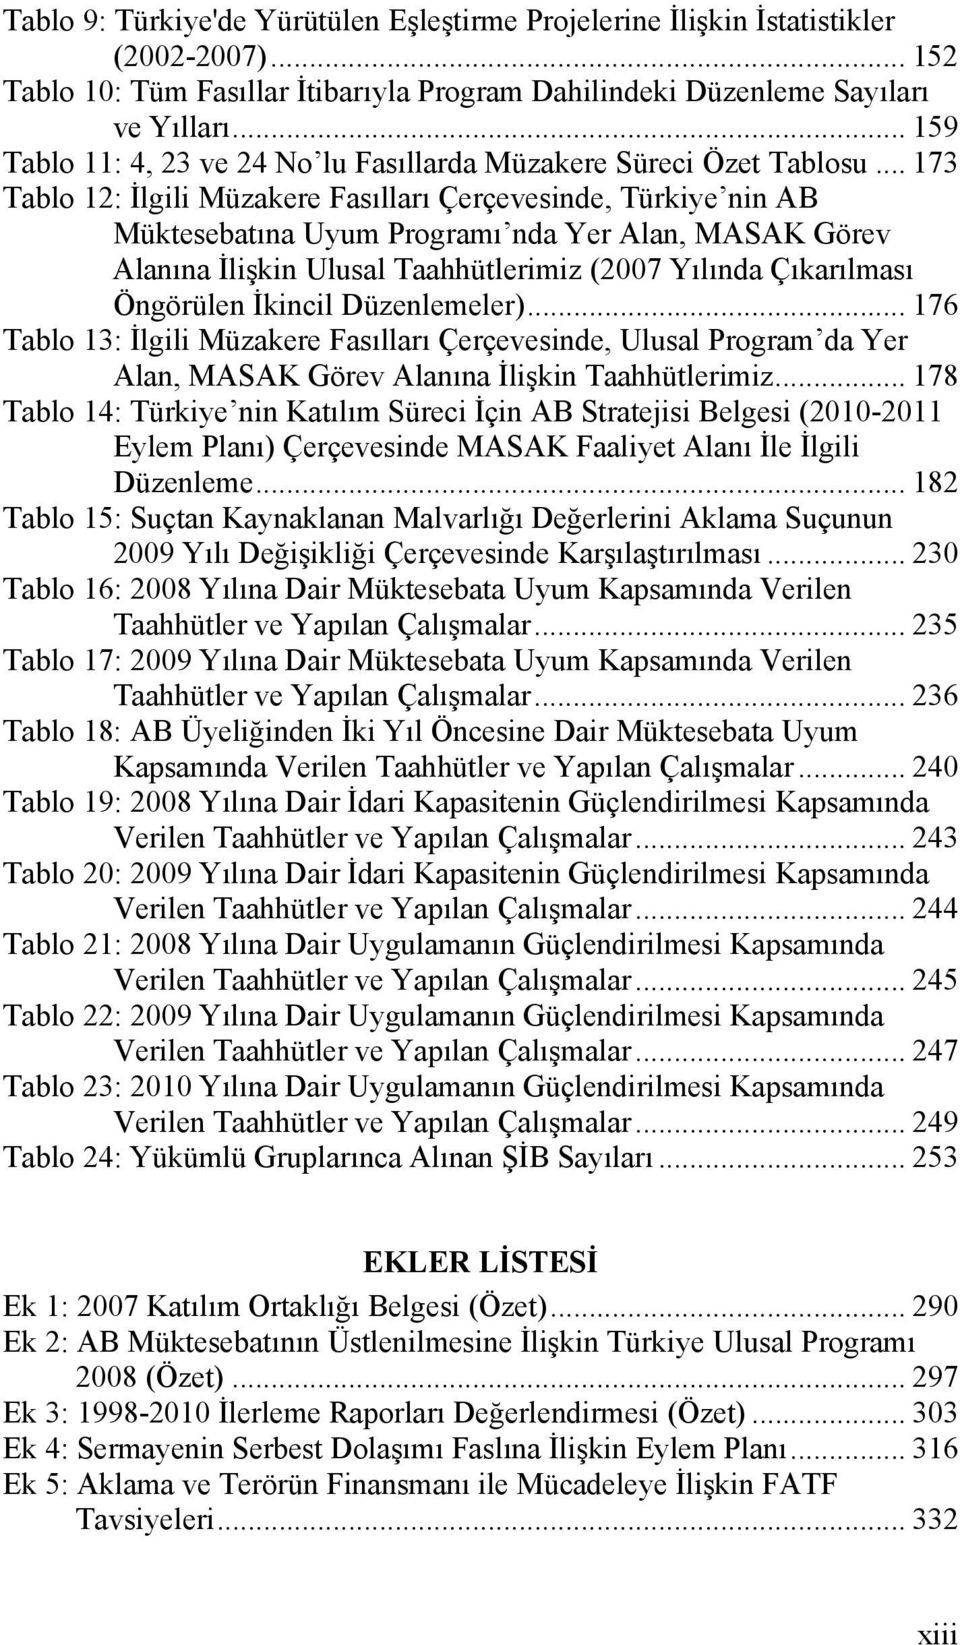 .. 173 Tablo 12: İlgili Müzakere Fasılları Çerçevesinde, Türkiye nin AB Müktesebatına Uyum Programı nda Yer Alan, MASAK Görev Alanına İlişkin Ulusal Taahhütlerimiz (2007 Yılında Çıkarılması Öngörülen